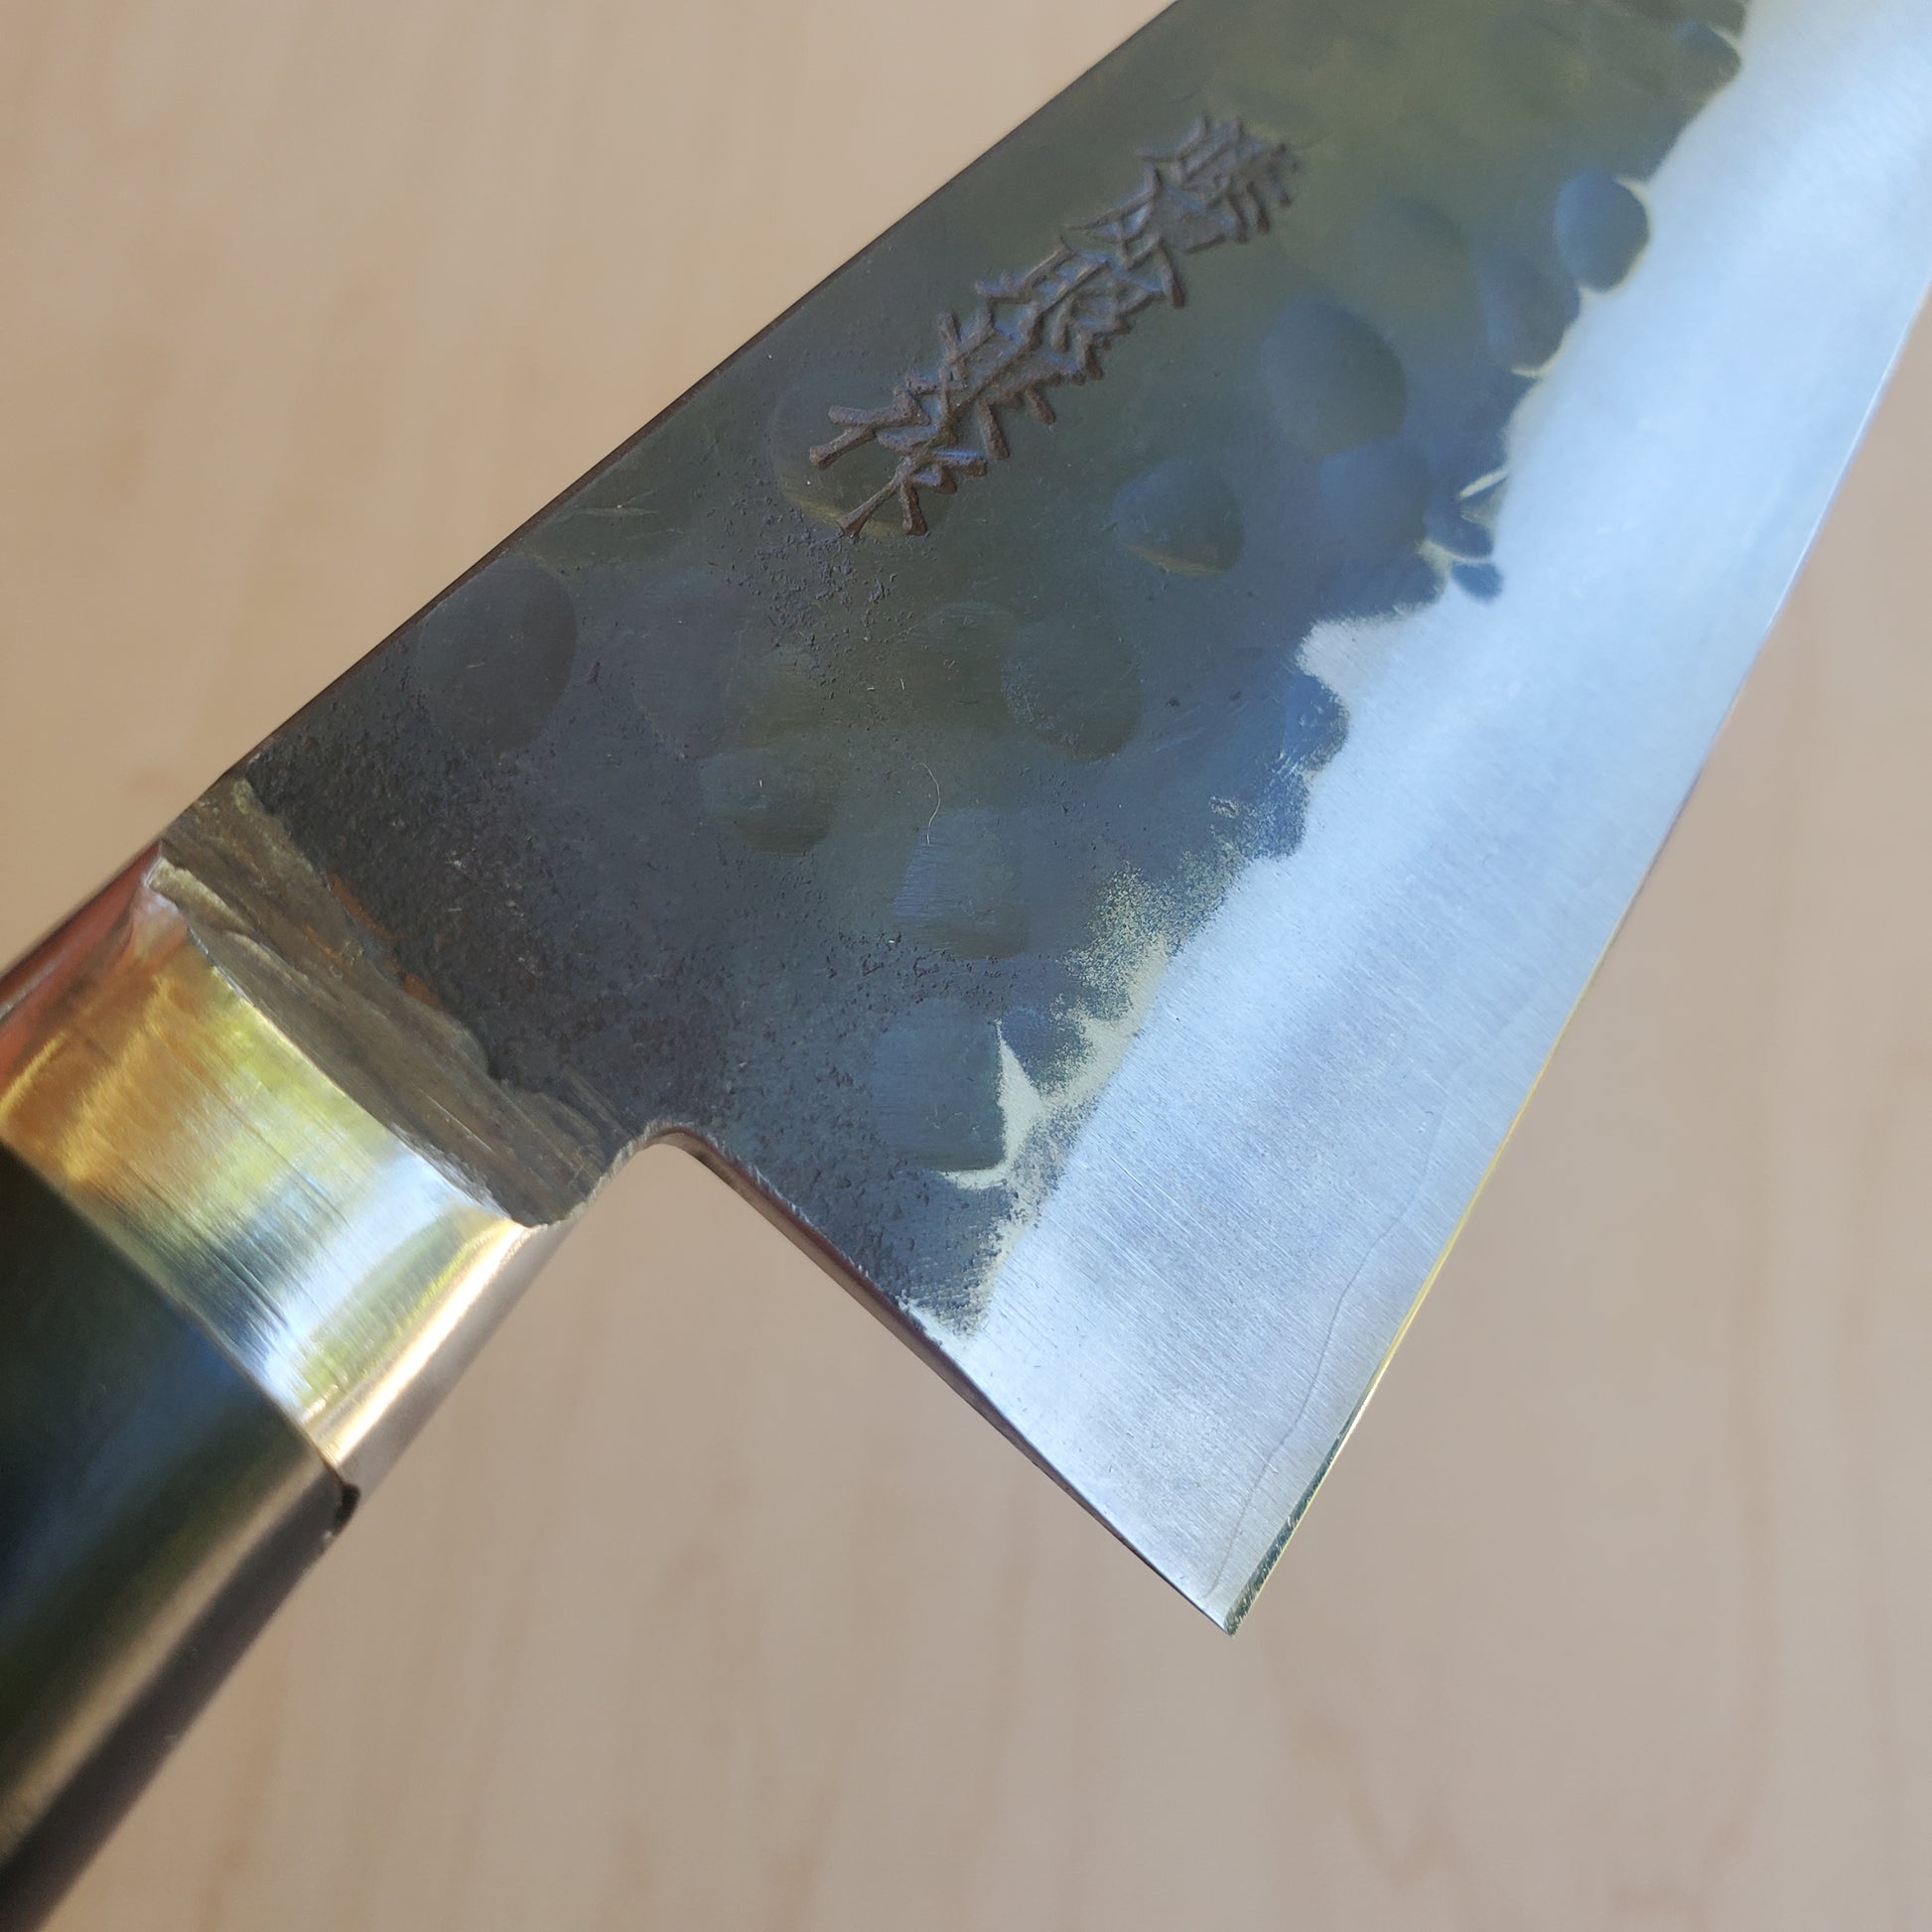 Japanese Knives  Japanese Knife Manufacturer TERUYASU FUJIWARA